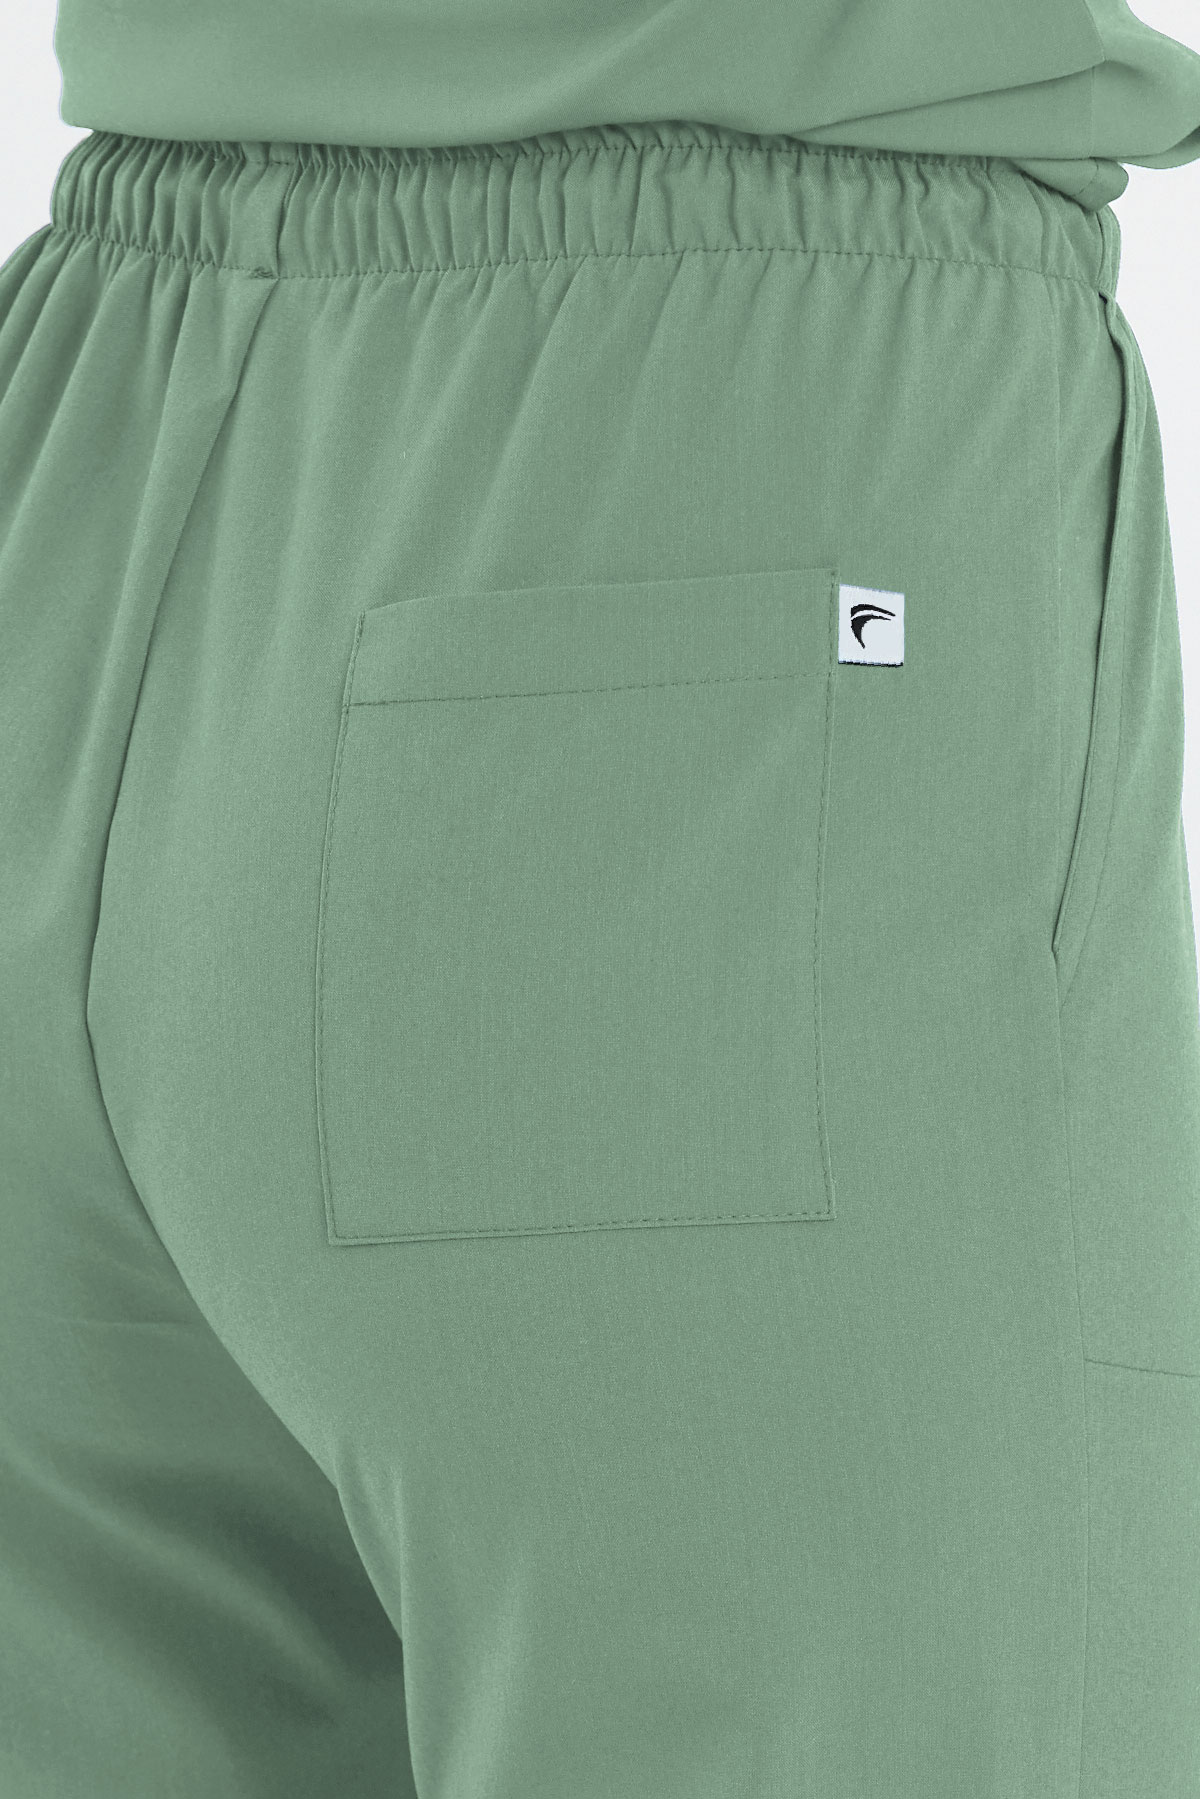 1009 Basic Mint Yeşili Pantolon